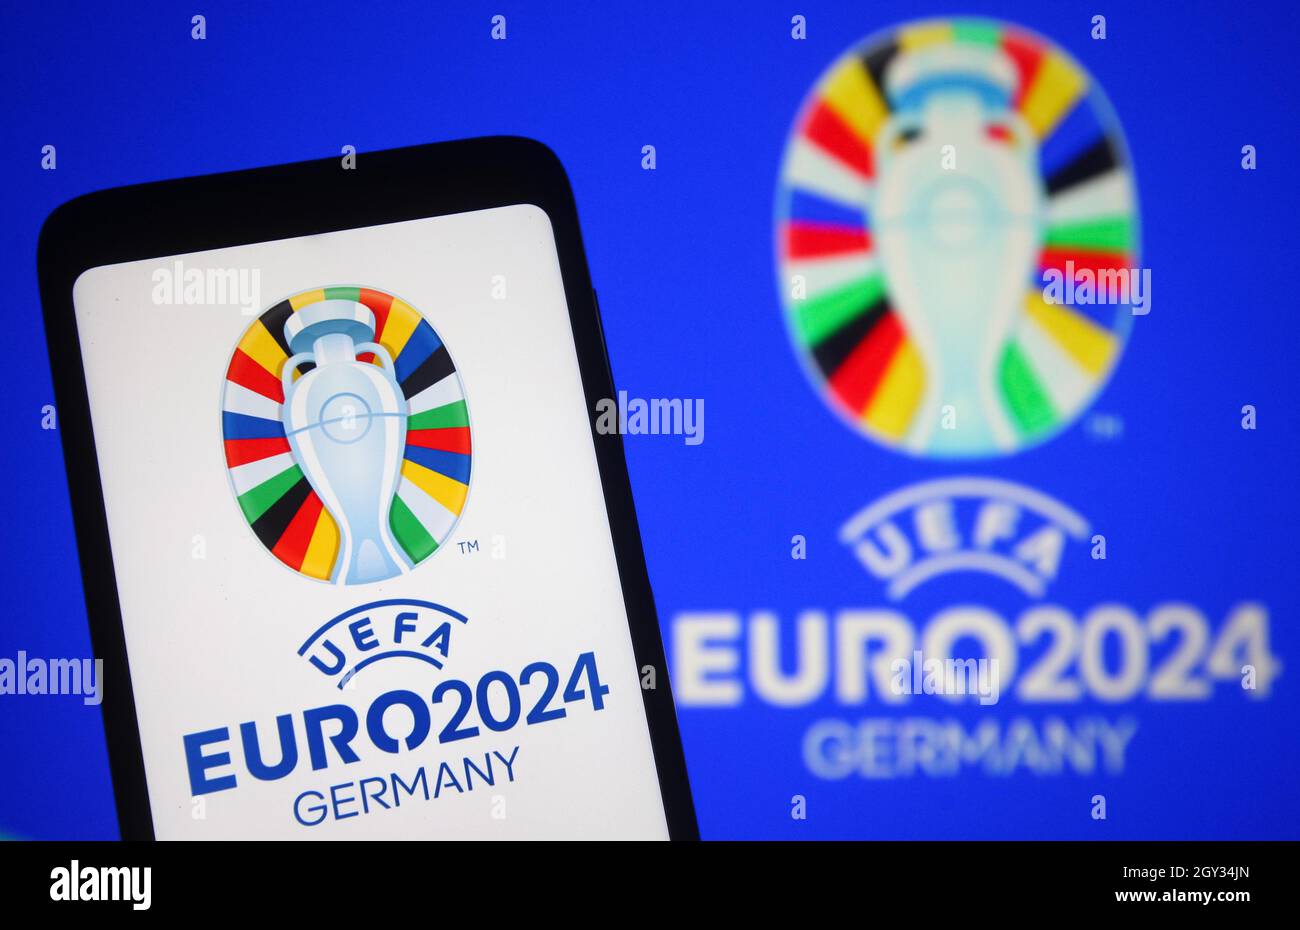 Dans cette illustration, le logo de l'UEFA Euro 2024 (Championnat d'Europe de football 2024 de l'UEFA) est visible sur un smartphone et un écran de pc. Banque D'Images